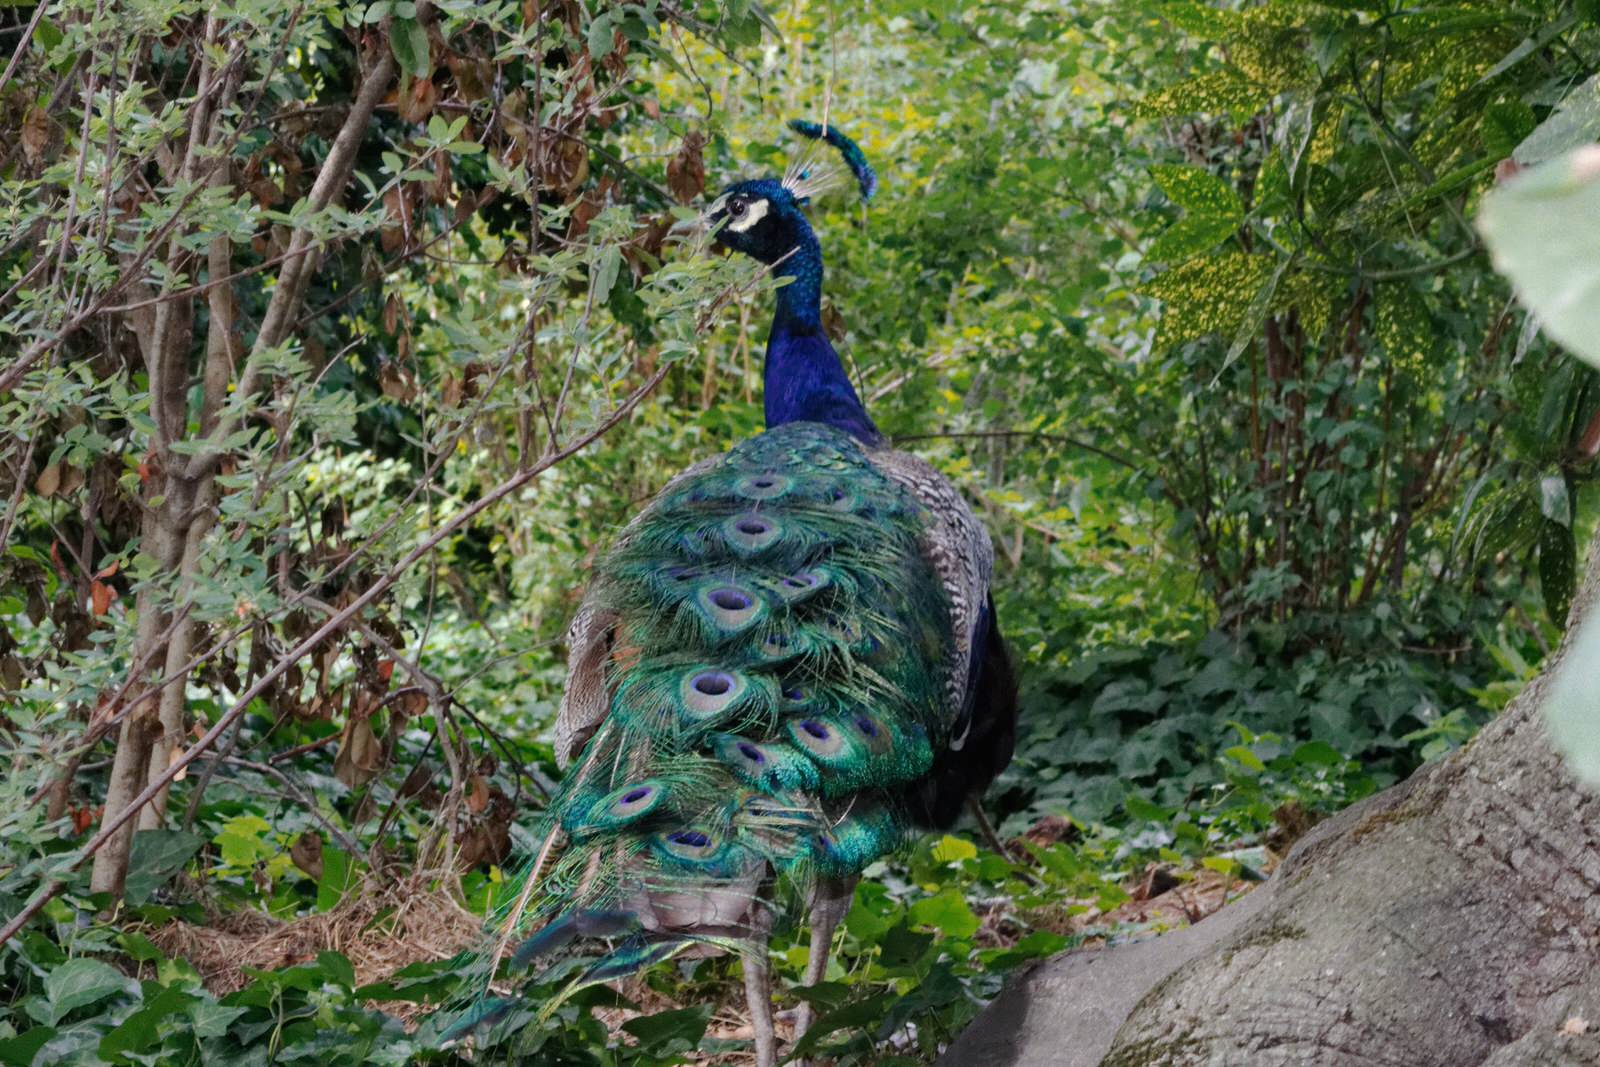 Peacock in Paris